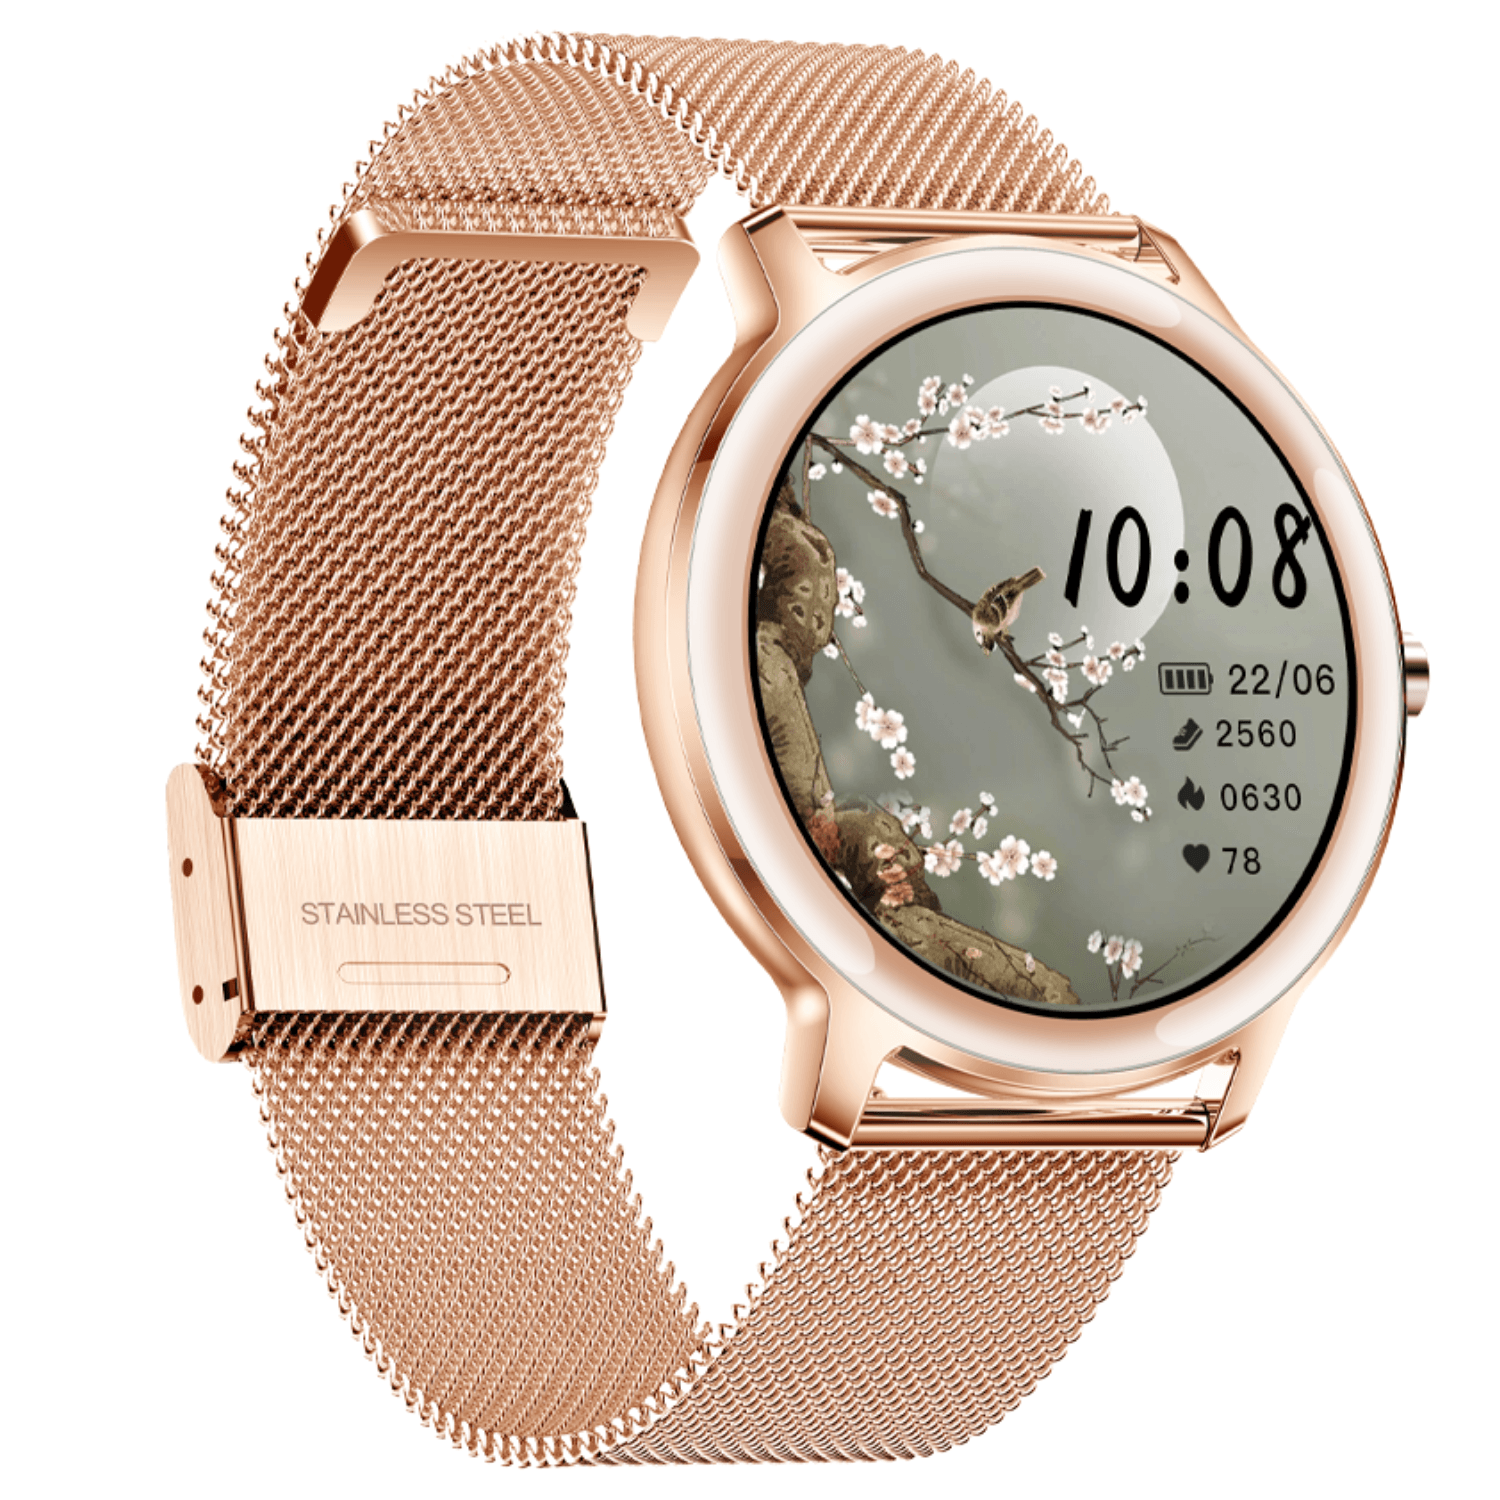 VOGUE Andromeda Smartwatch Rose Gold Steel Bracelet 2020950151